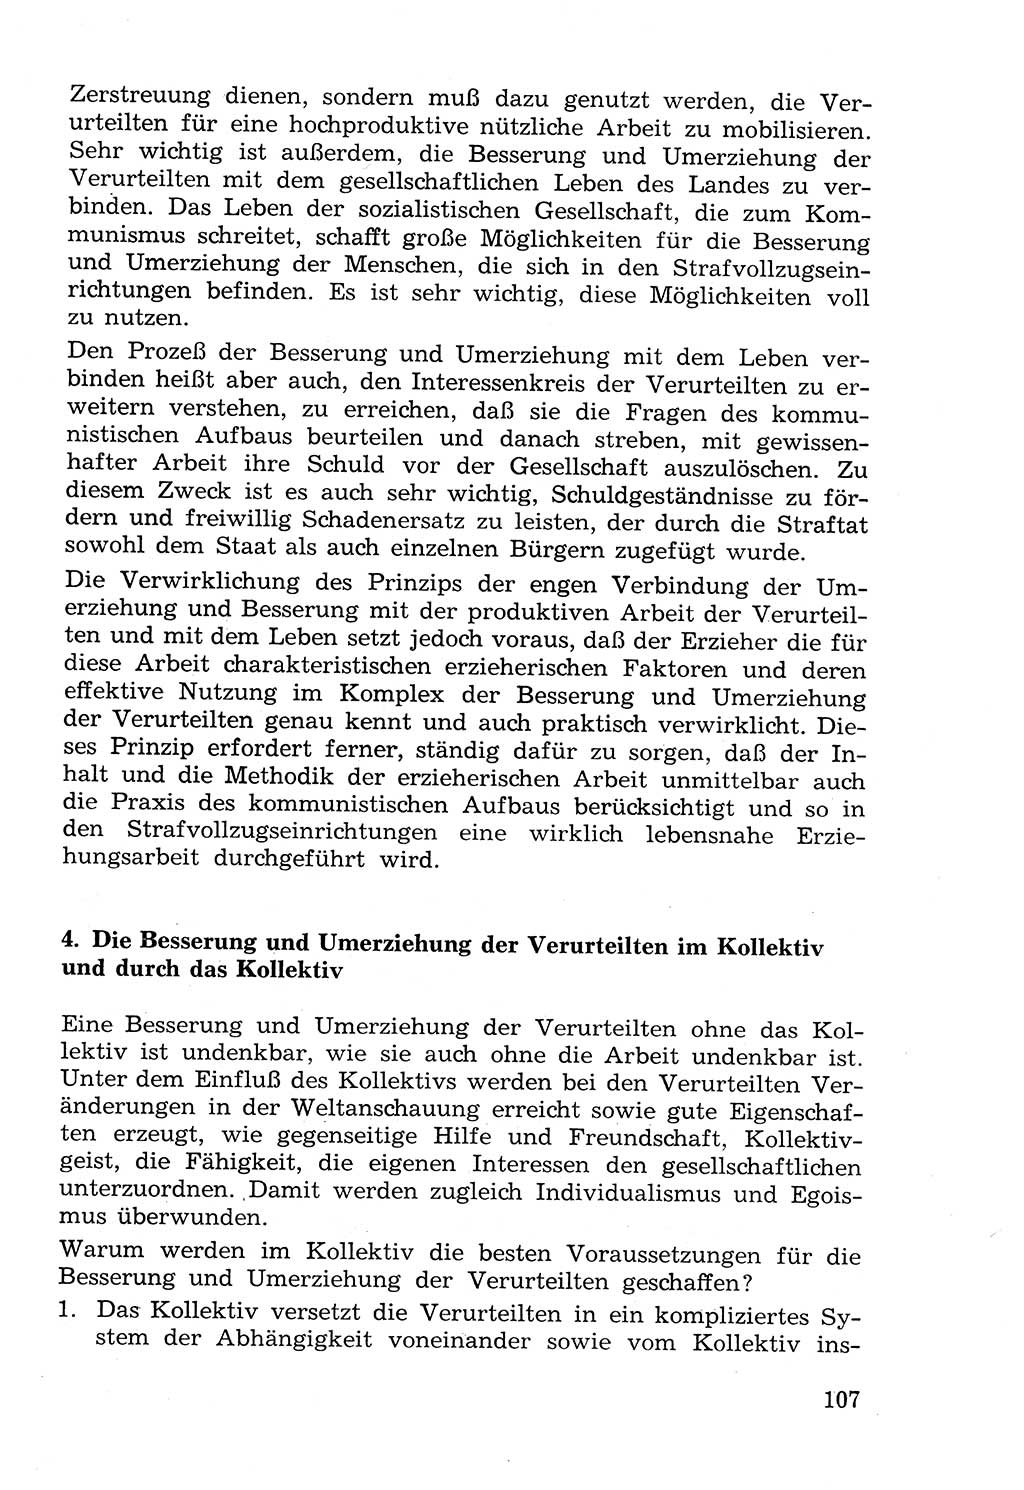 Lehrbuch der Strafvollzugspädagogik [Deutsche Demokratische Republik (DDR)] 1969, Seite 107 (Lb. SV-Pd. DDR 1969, S. 107)